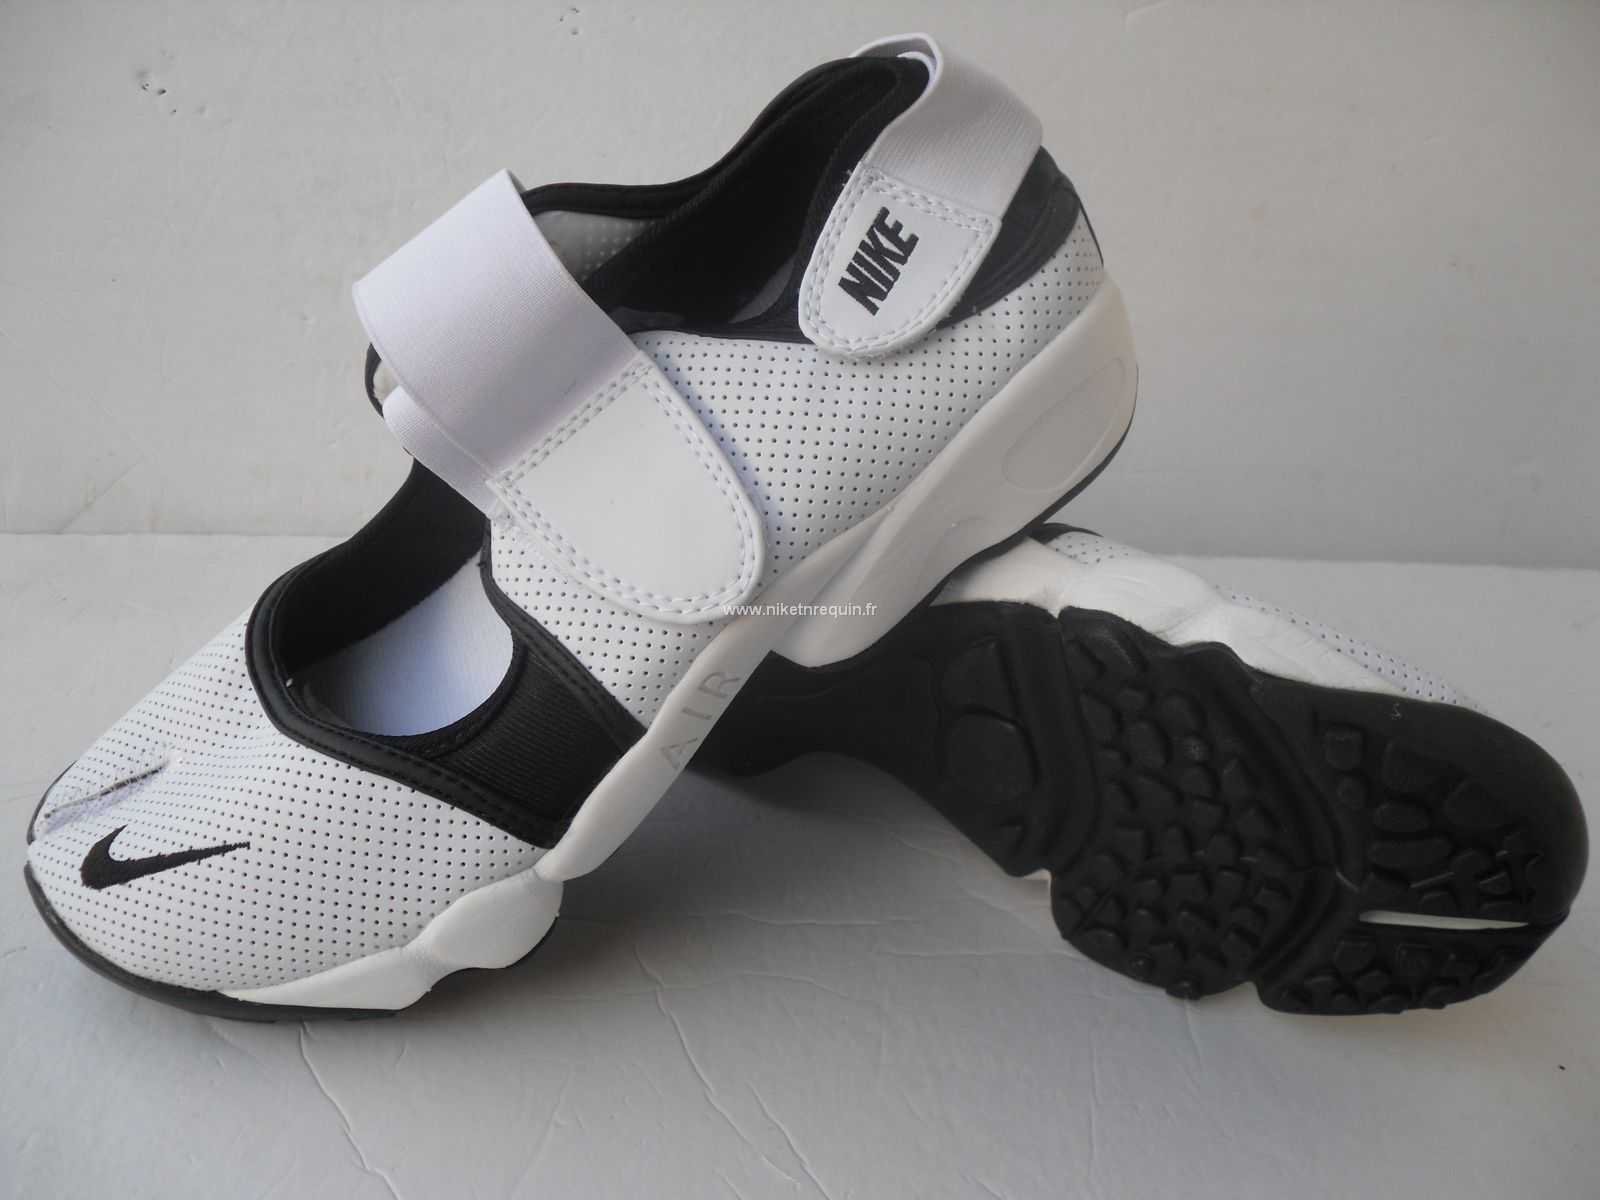 Nouveau Modele De Chaussures Nike Rift Maniaques Shox Blanc Noir